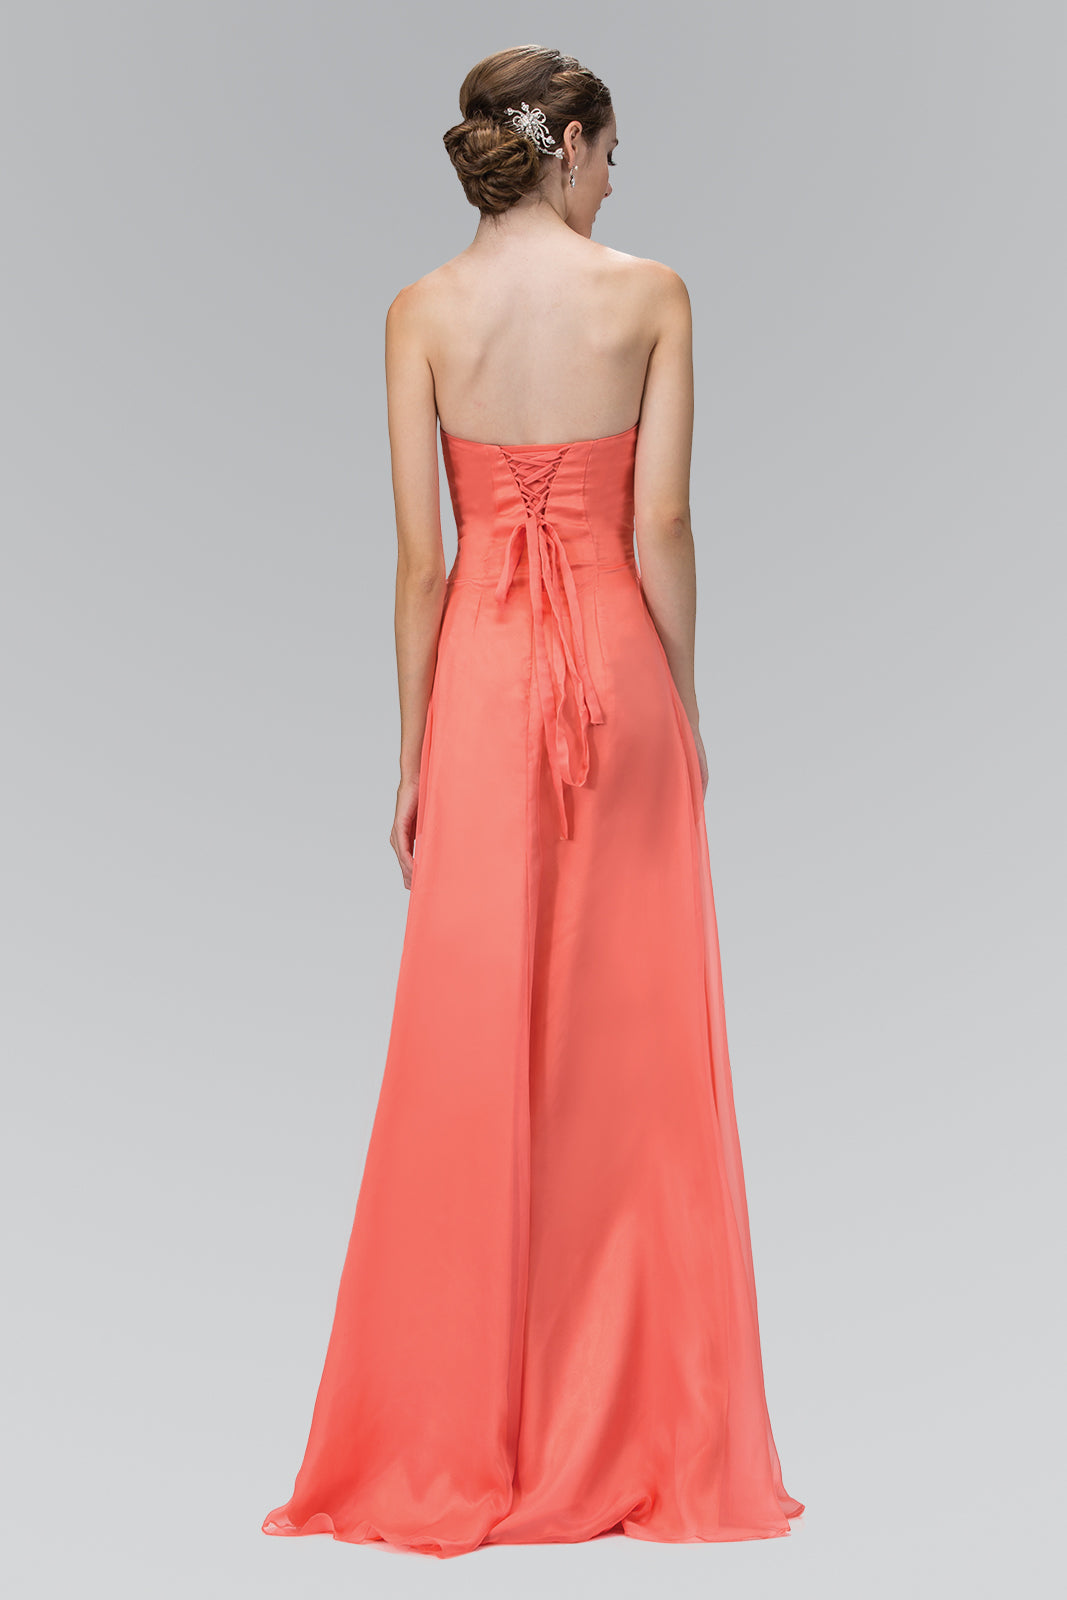 Strapless Long Prom Dress Formal - The Dress Outlet Elizabeth K Coral